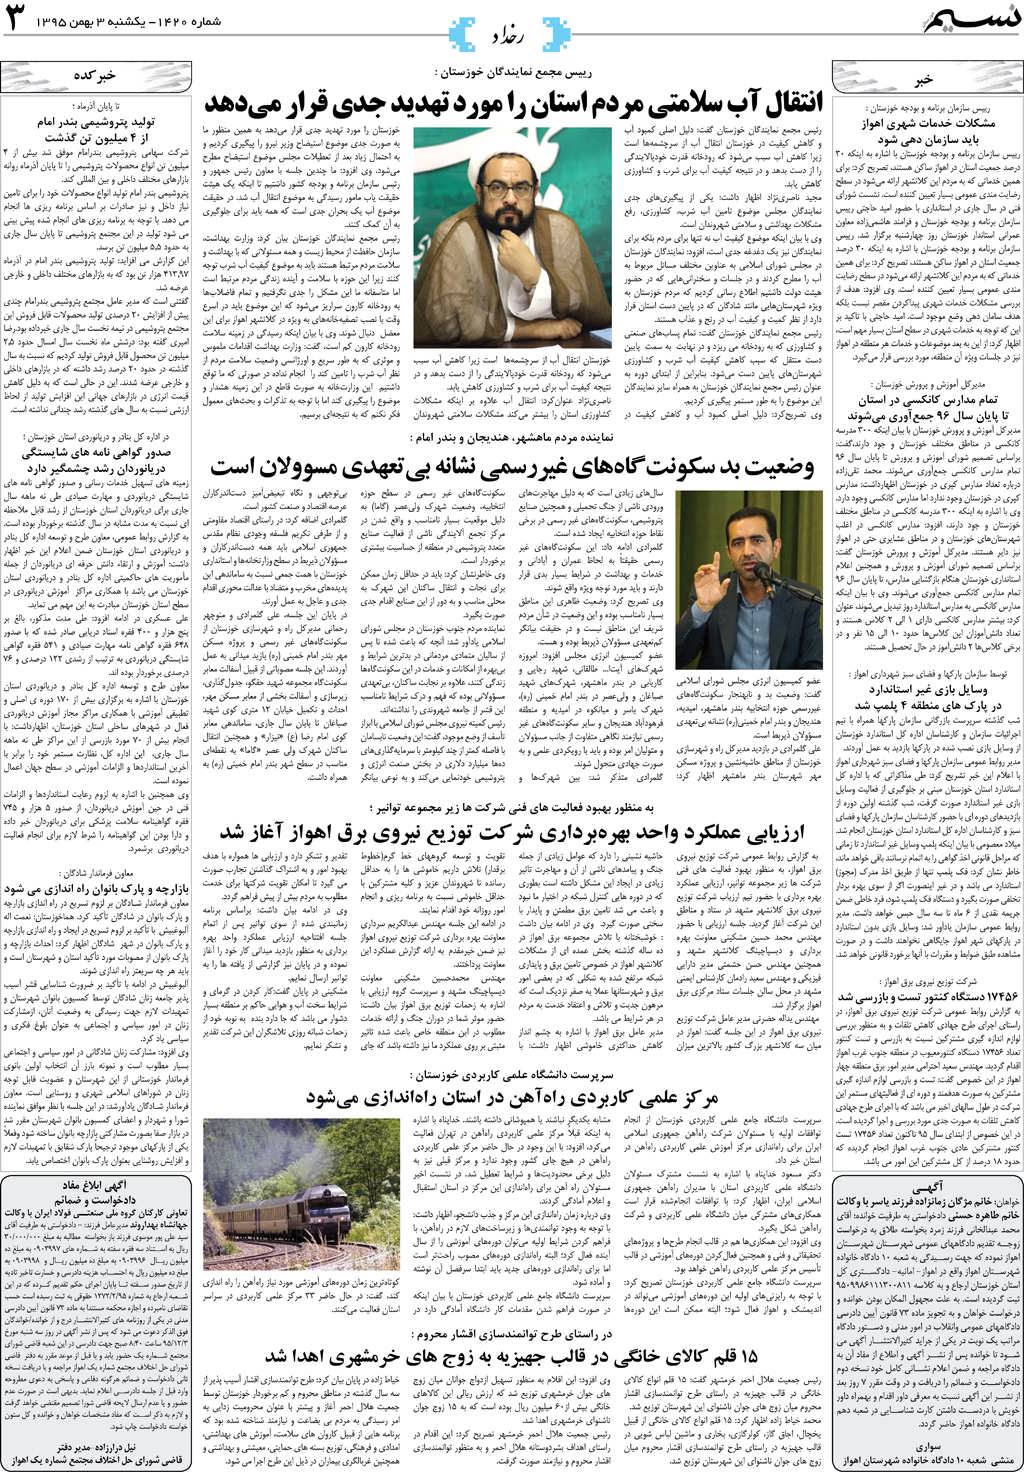 صفحه رخداد روزنامه نسیم شماره 1420